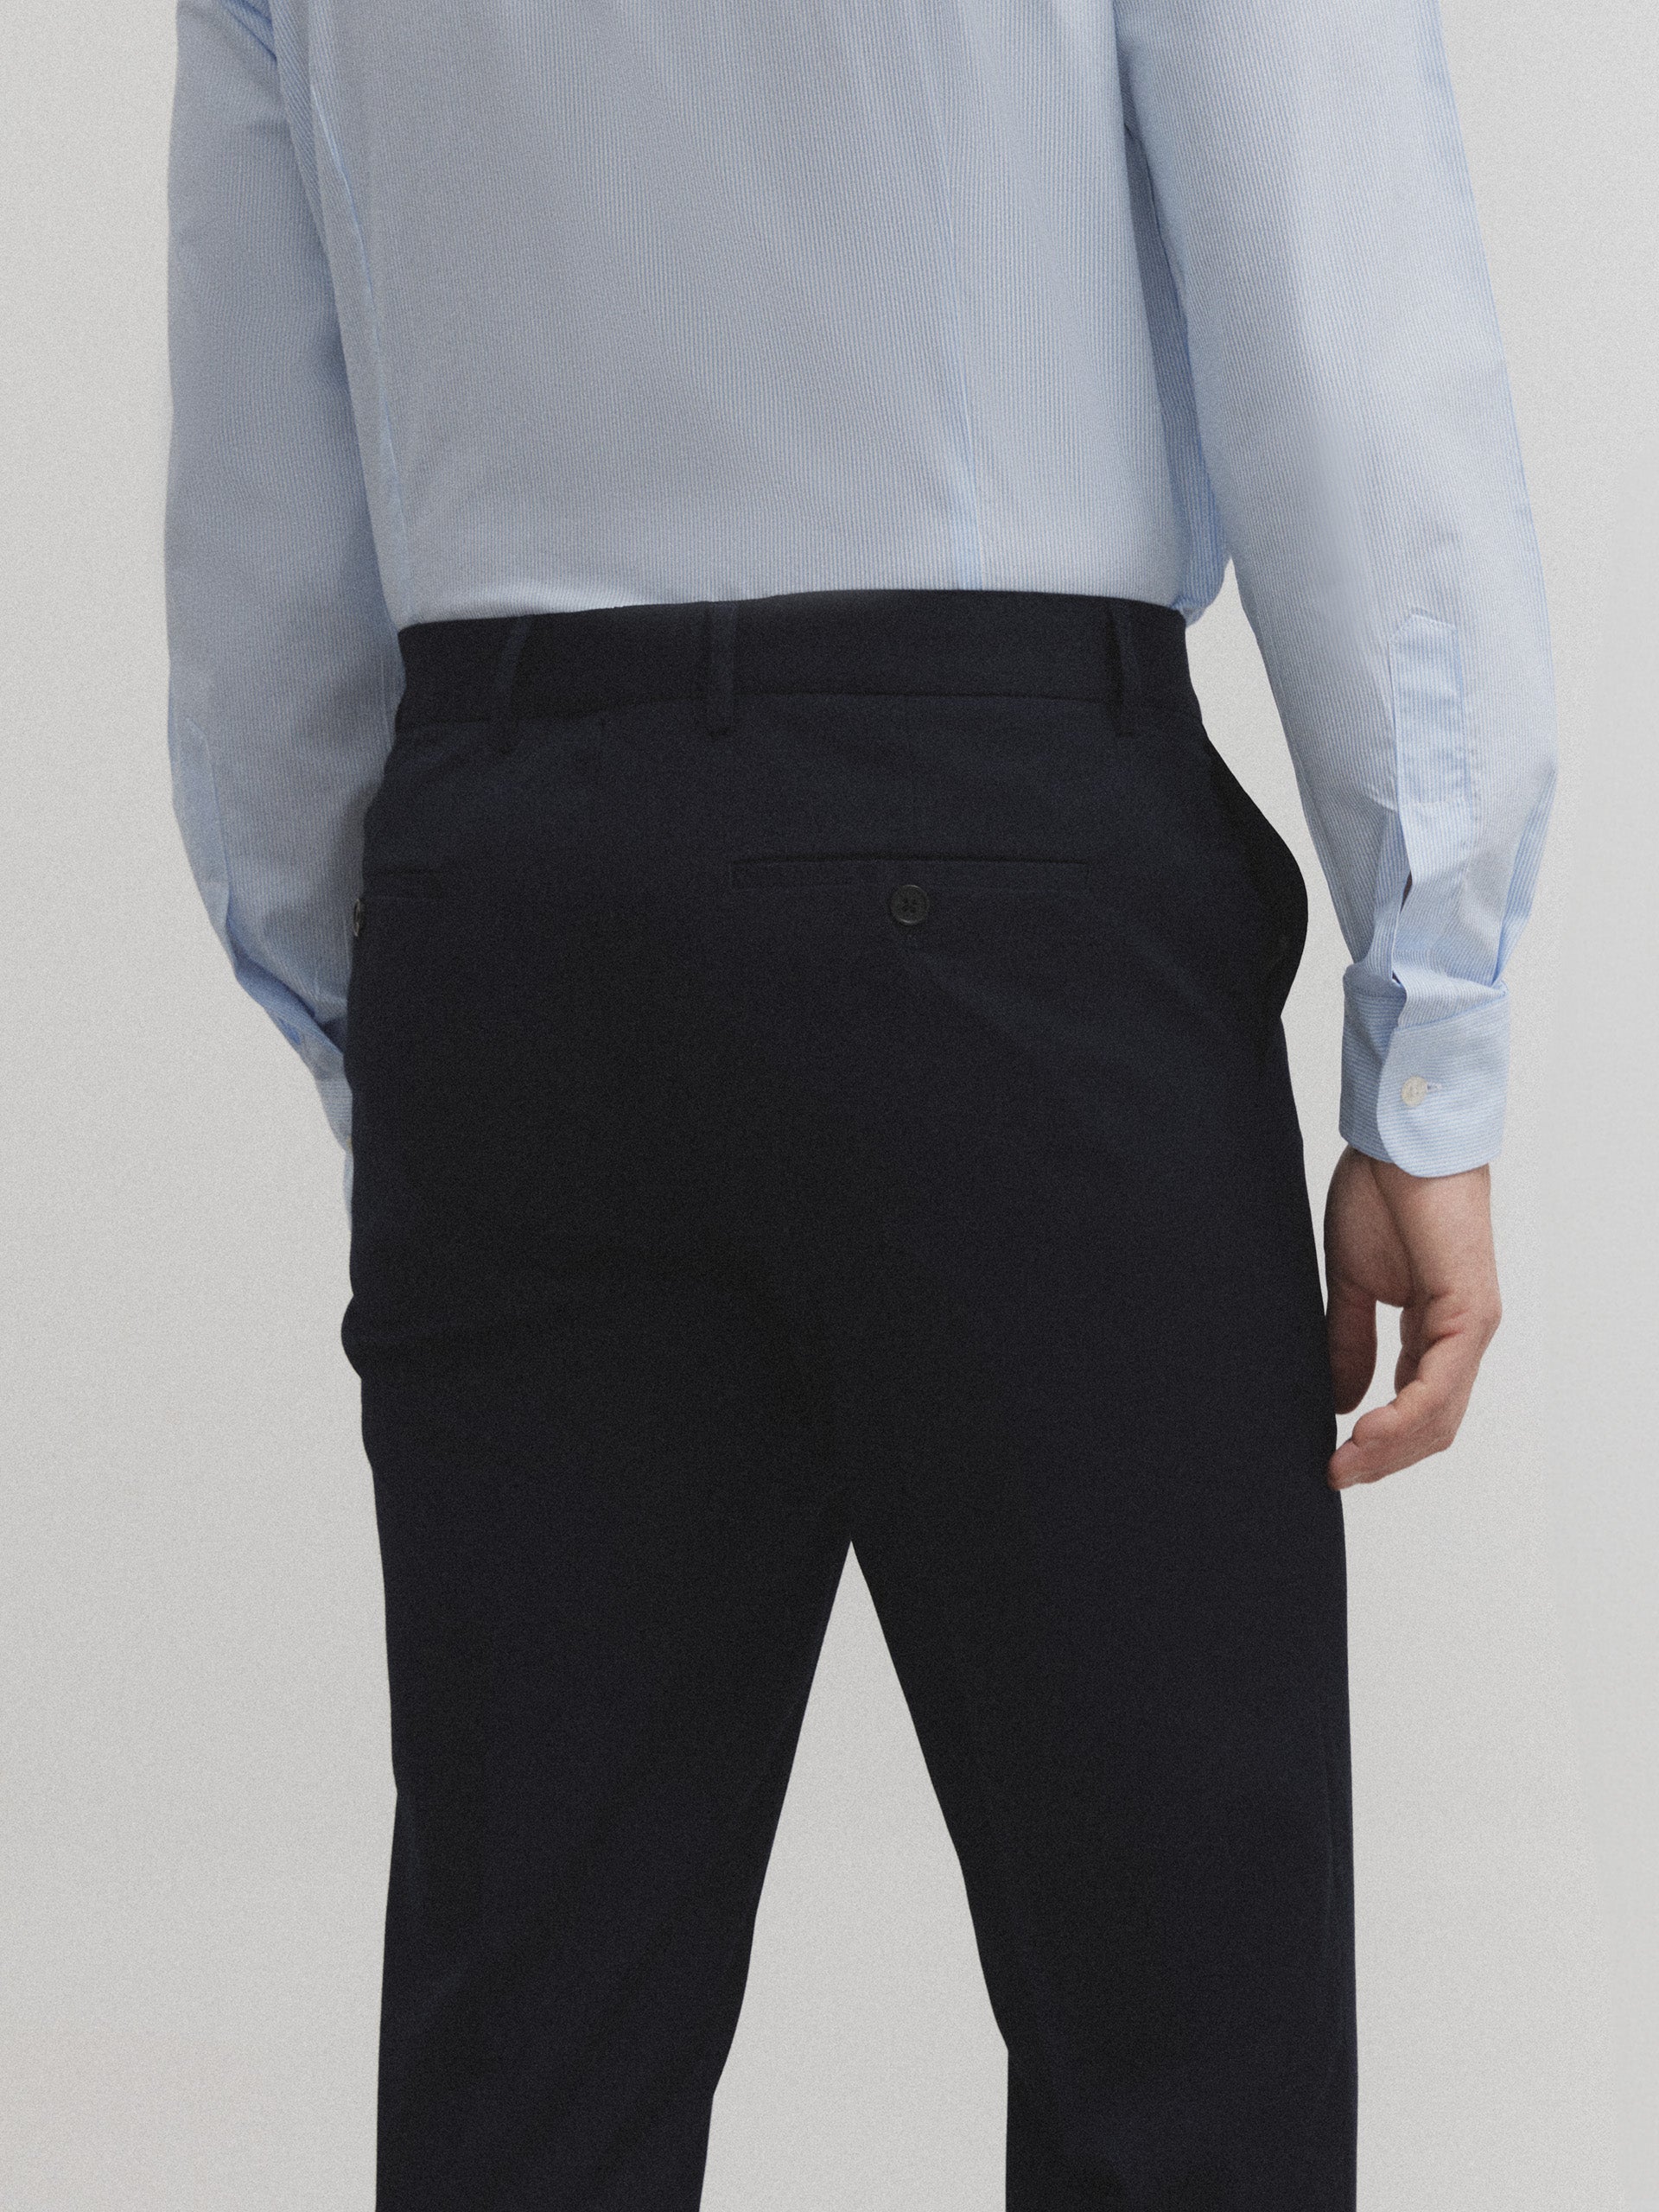 Navy blue essential suit pants